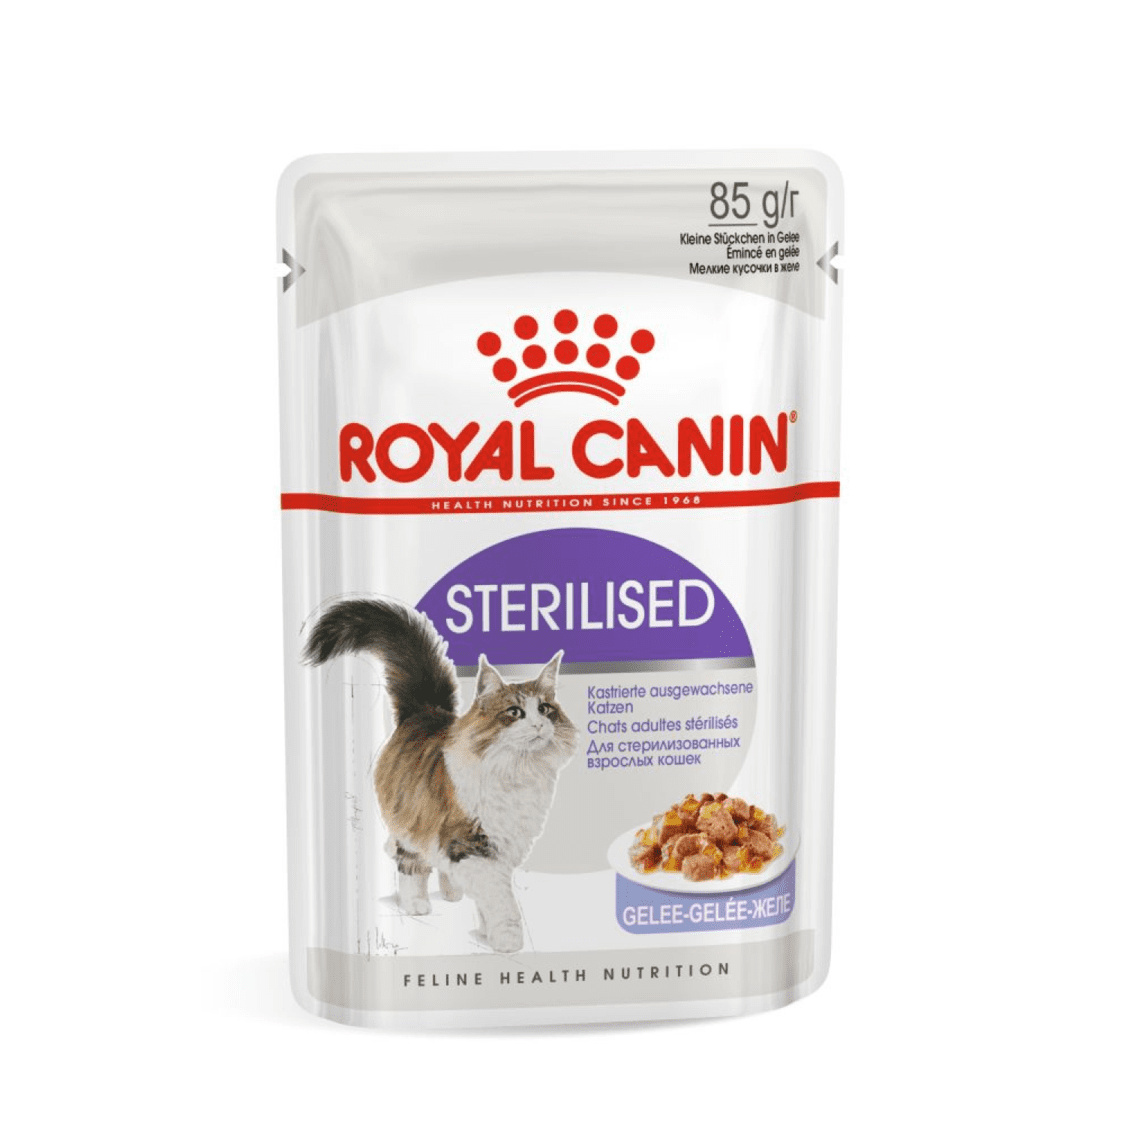 Royal Canin паучи Royal Canin паучи кусочки в желе для кастрированных кошек 1-7лет (1 шт.) royal canin паучи royal canin паучи кусочки в желе для кошек 1 7 лет идеальная кожа и шерсть 85 г